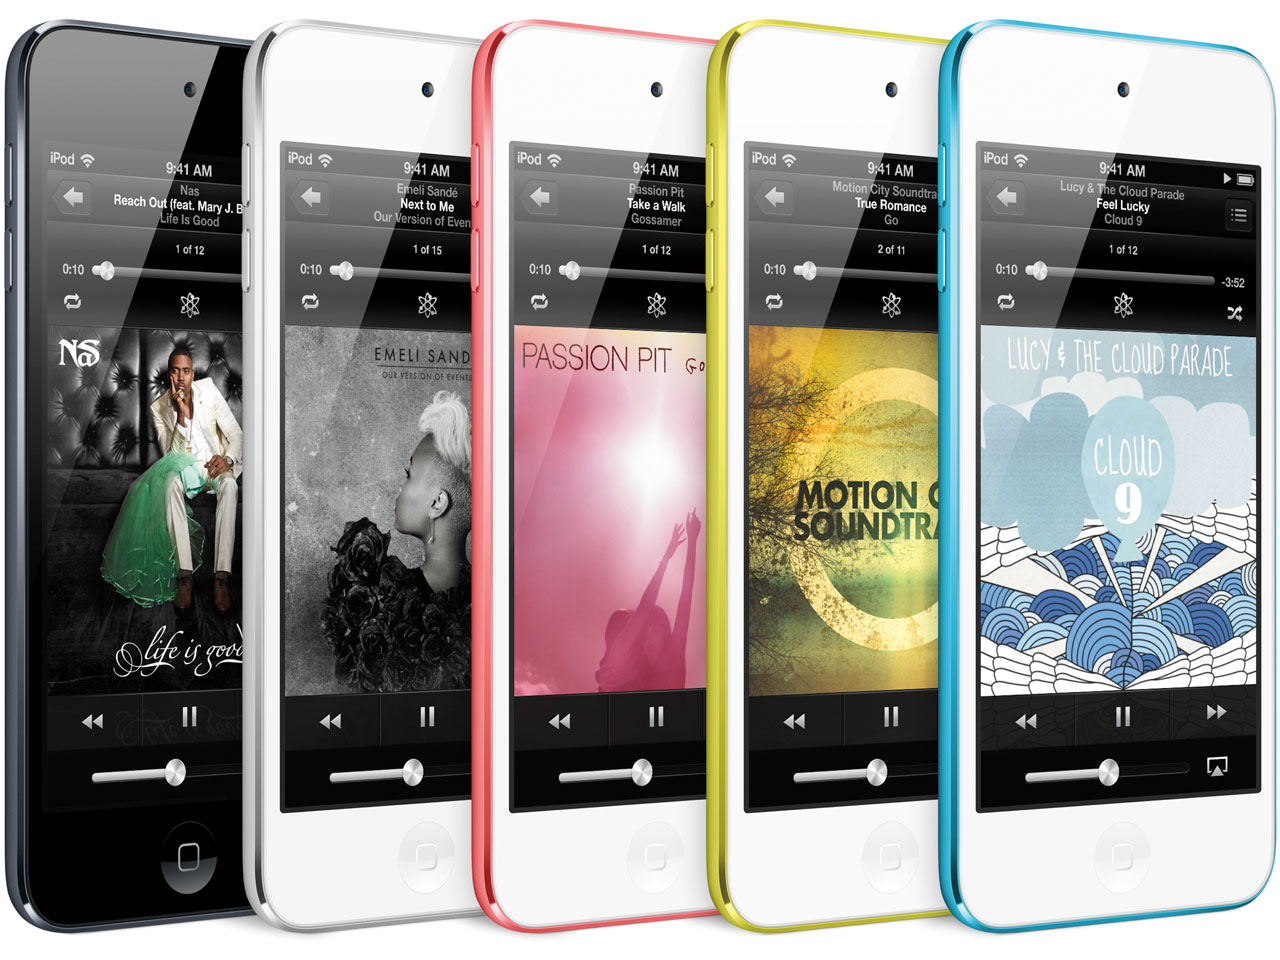 『カラーバリエーション2』 iPod touch MD717J/A [32GB ブルー] の製品画像